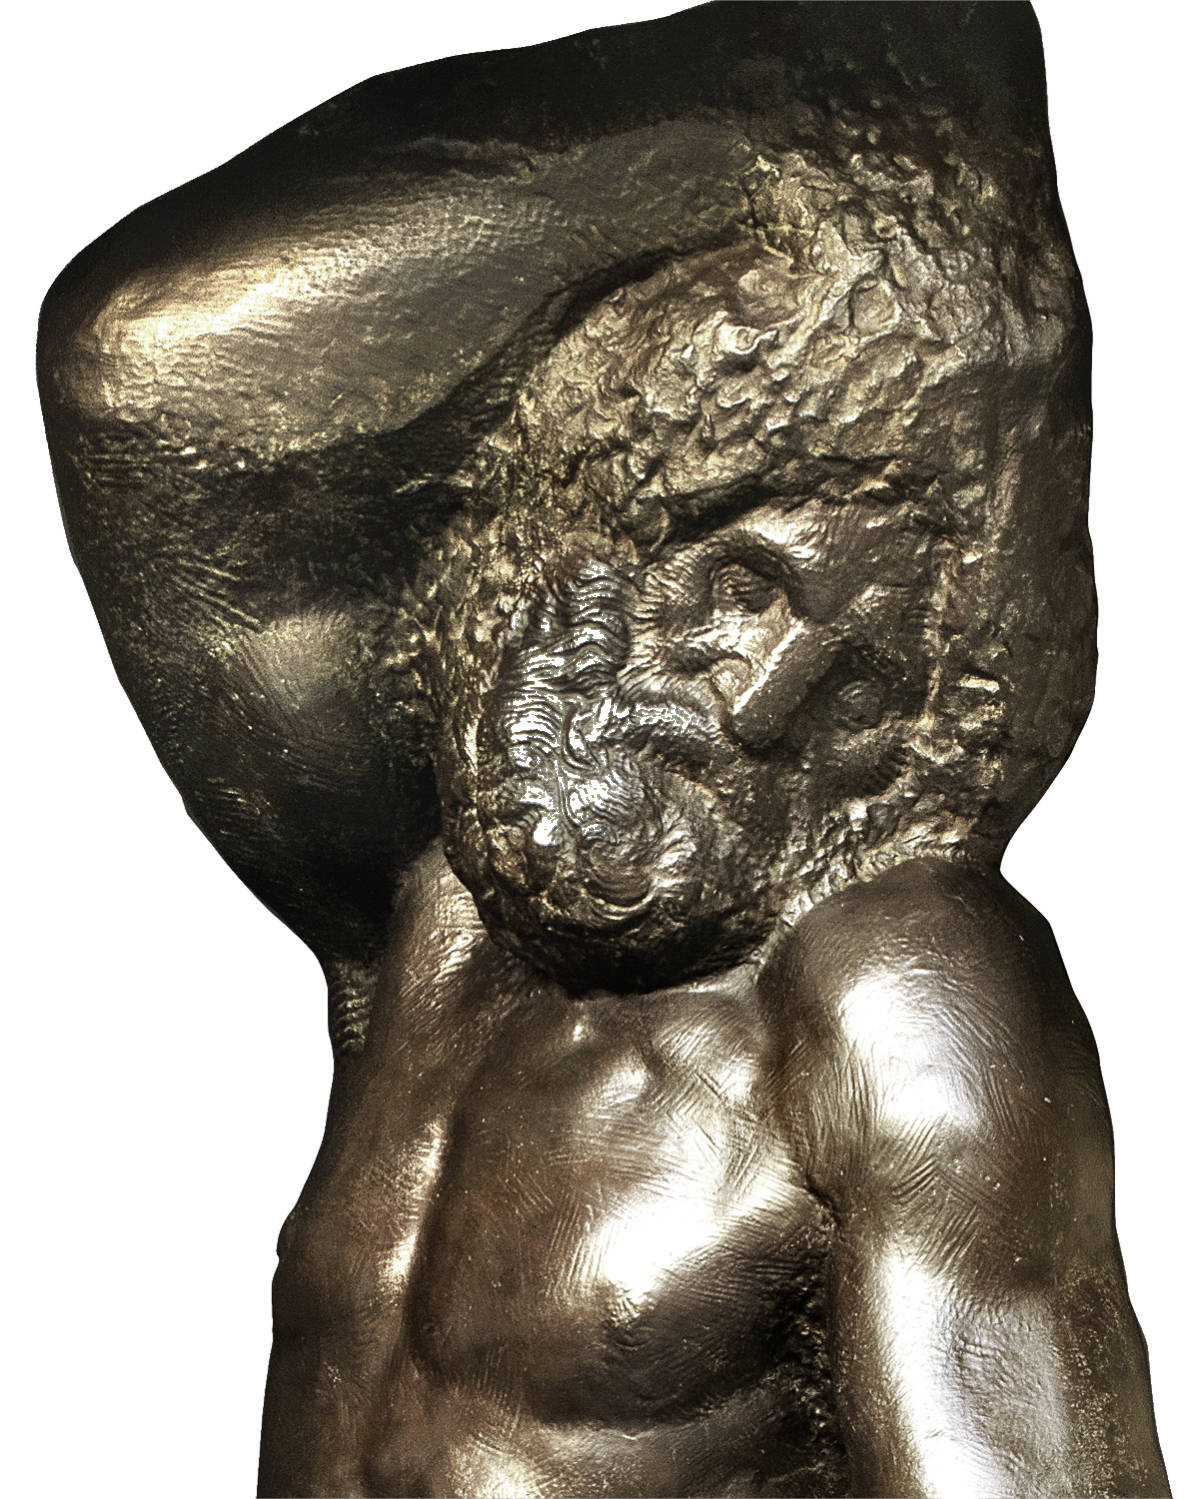 fonderia artistica ferdinando marinelli galleria bazzanti firenze replica in bronzo della scultura schiavo giovane di michelangelo